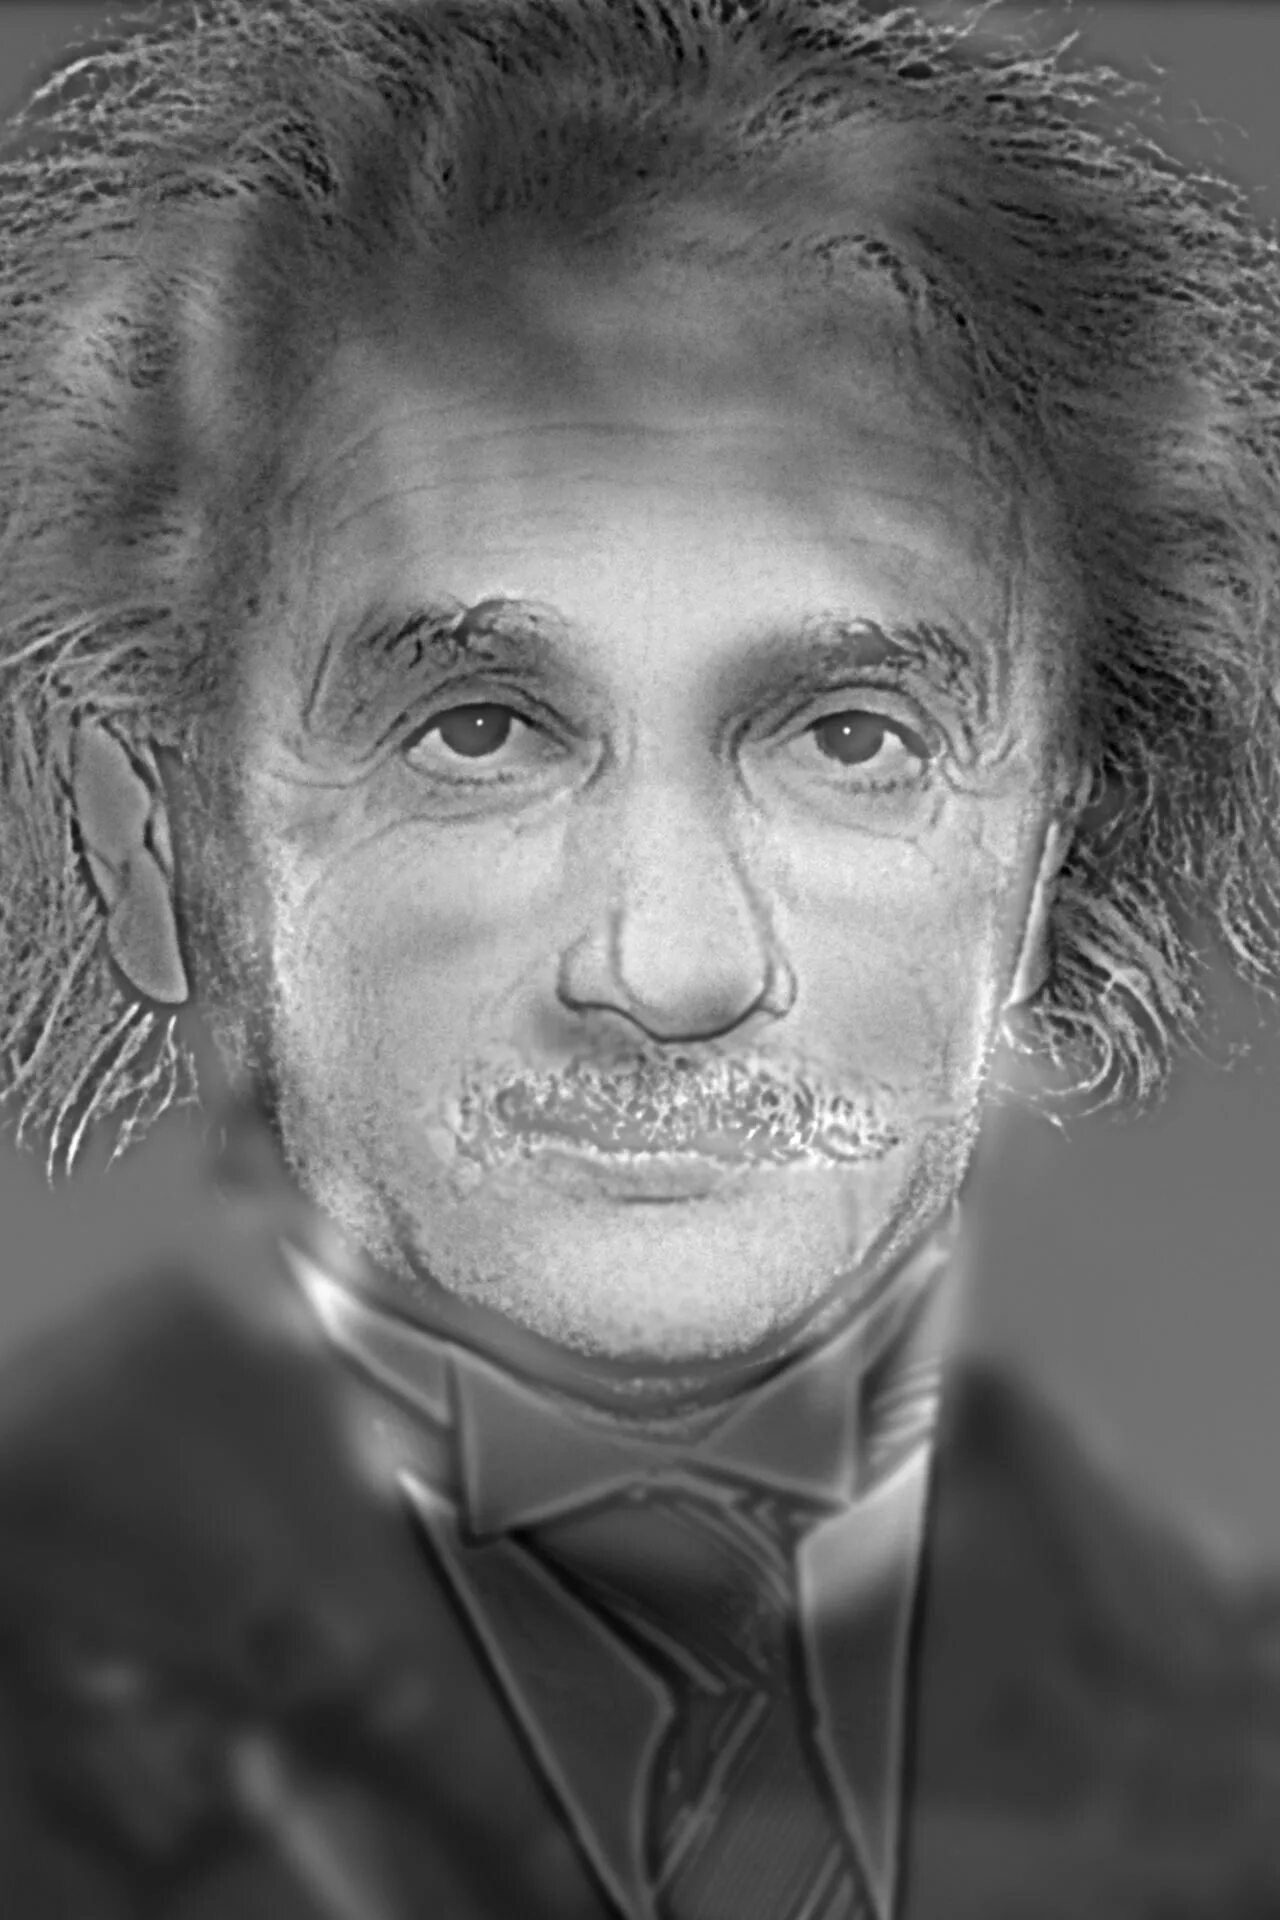 Чуть чуть прищурь глаза. Иллюзия Эйнштейна и Монро. Оптическая иллюзия Эйнштейн Монро. Тест на близорукость. Оптические иллюзии Эйнштейн или Монро.